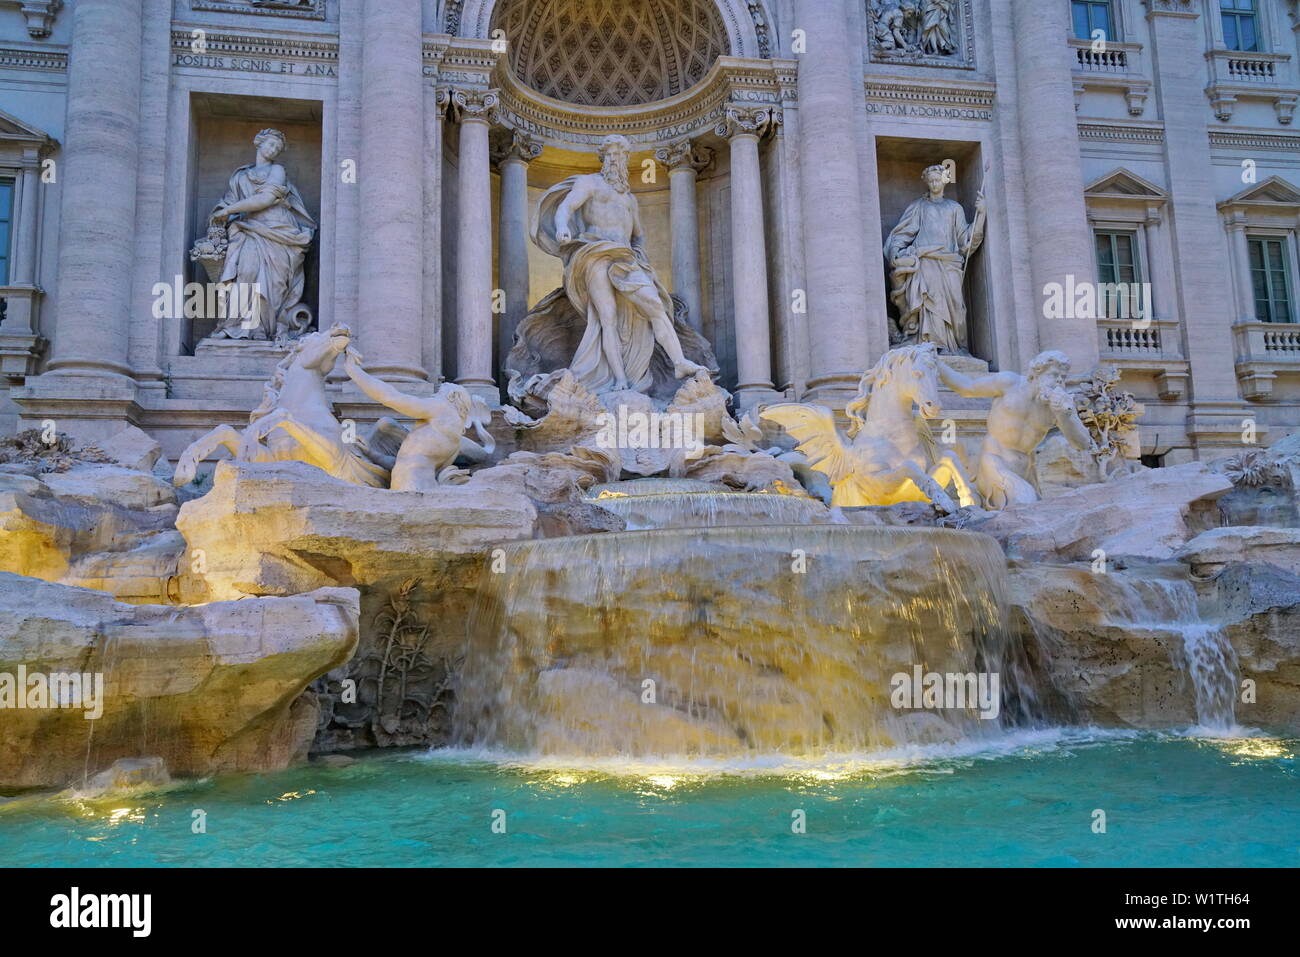 Berühmt und einer der schönsten Brunnen Roms - Trevi Brunnen (Fontana di Trevi). Italien Stockfoto